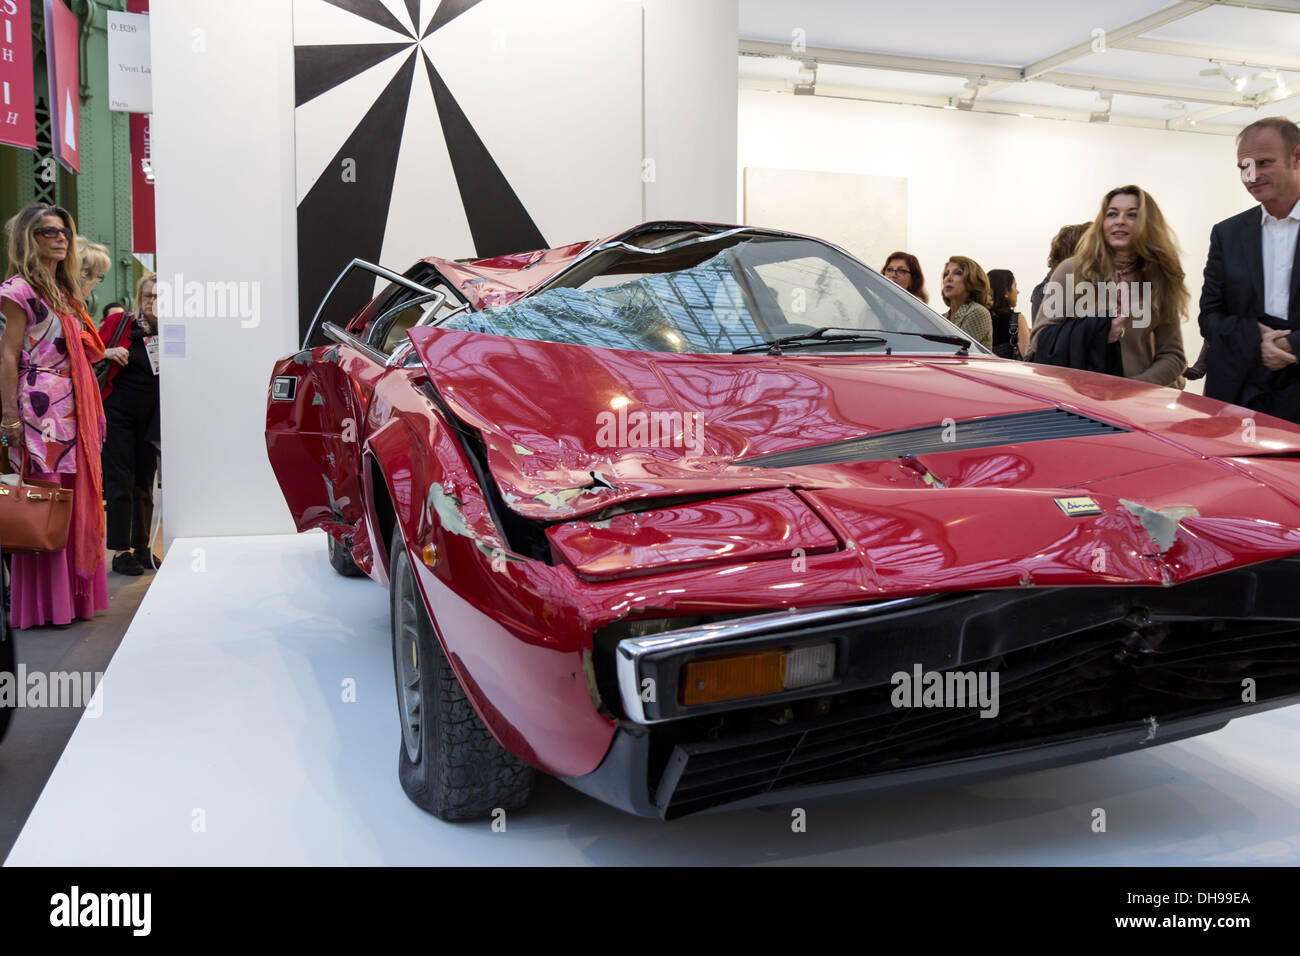 Zerstörten Ferrari Dino von Bertrand Lavier verkauft für 250.000$ bei der Eröffnung der Fiac 2013 (Messe für zeitgenössische Kunst) in Paris Stockfoto